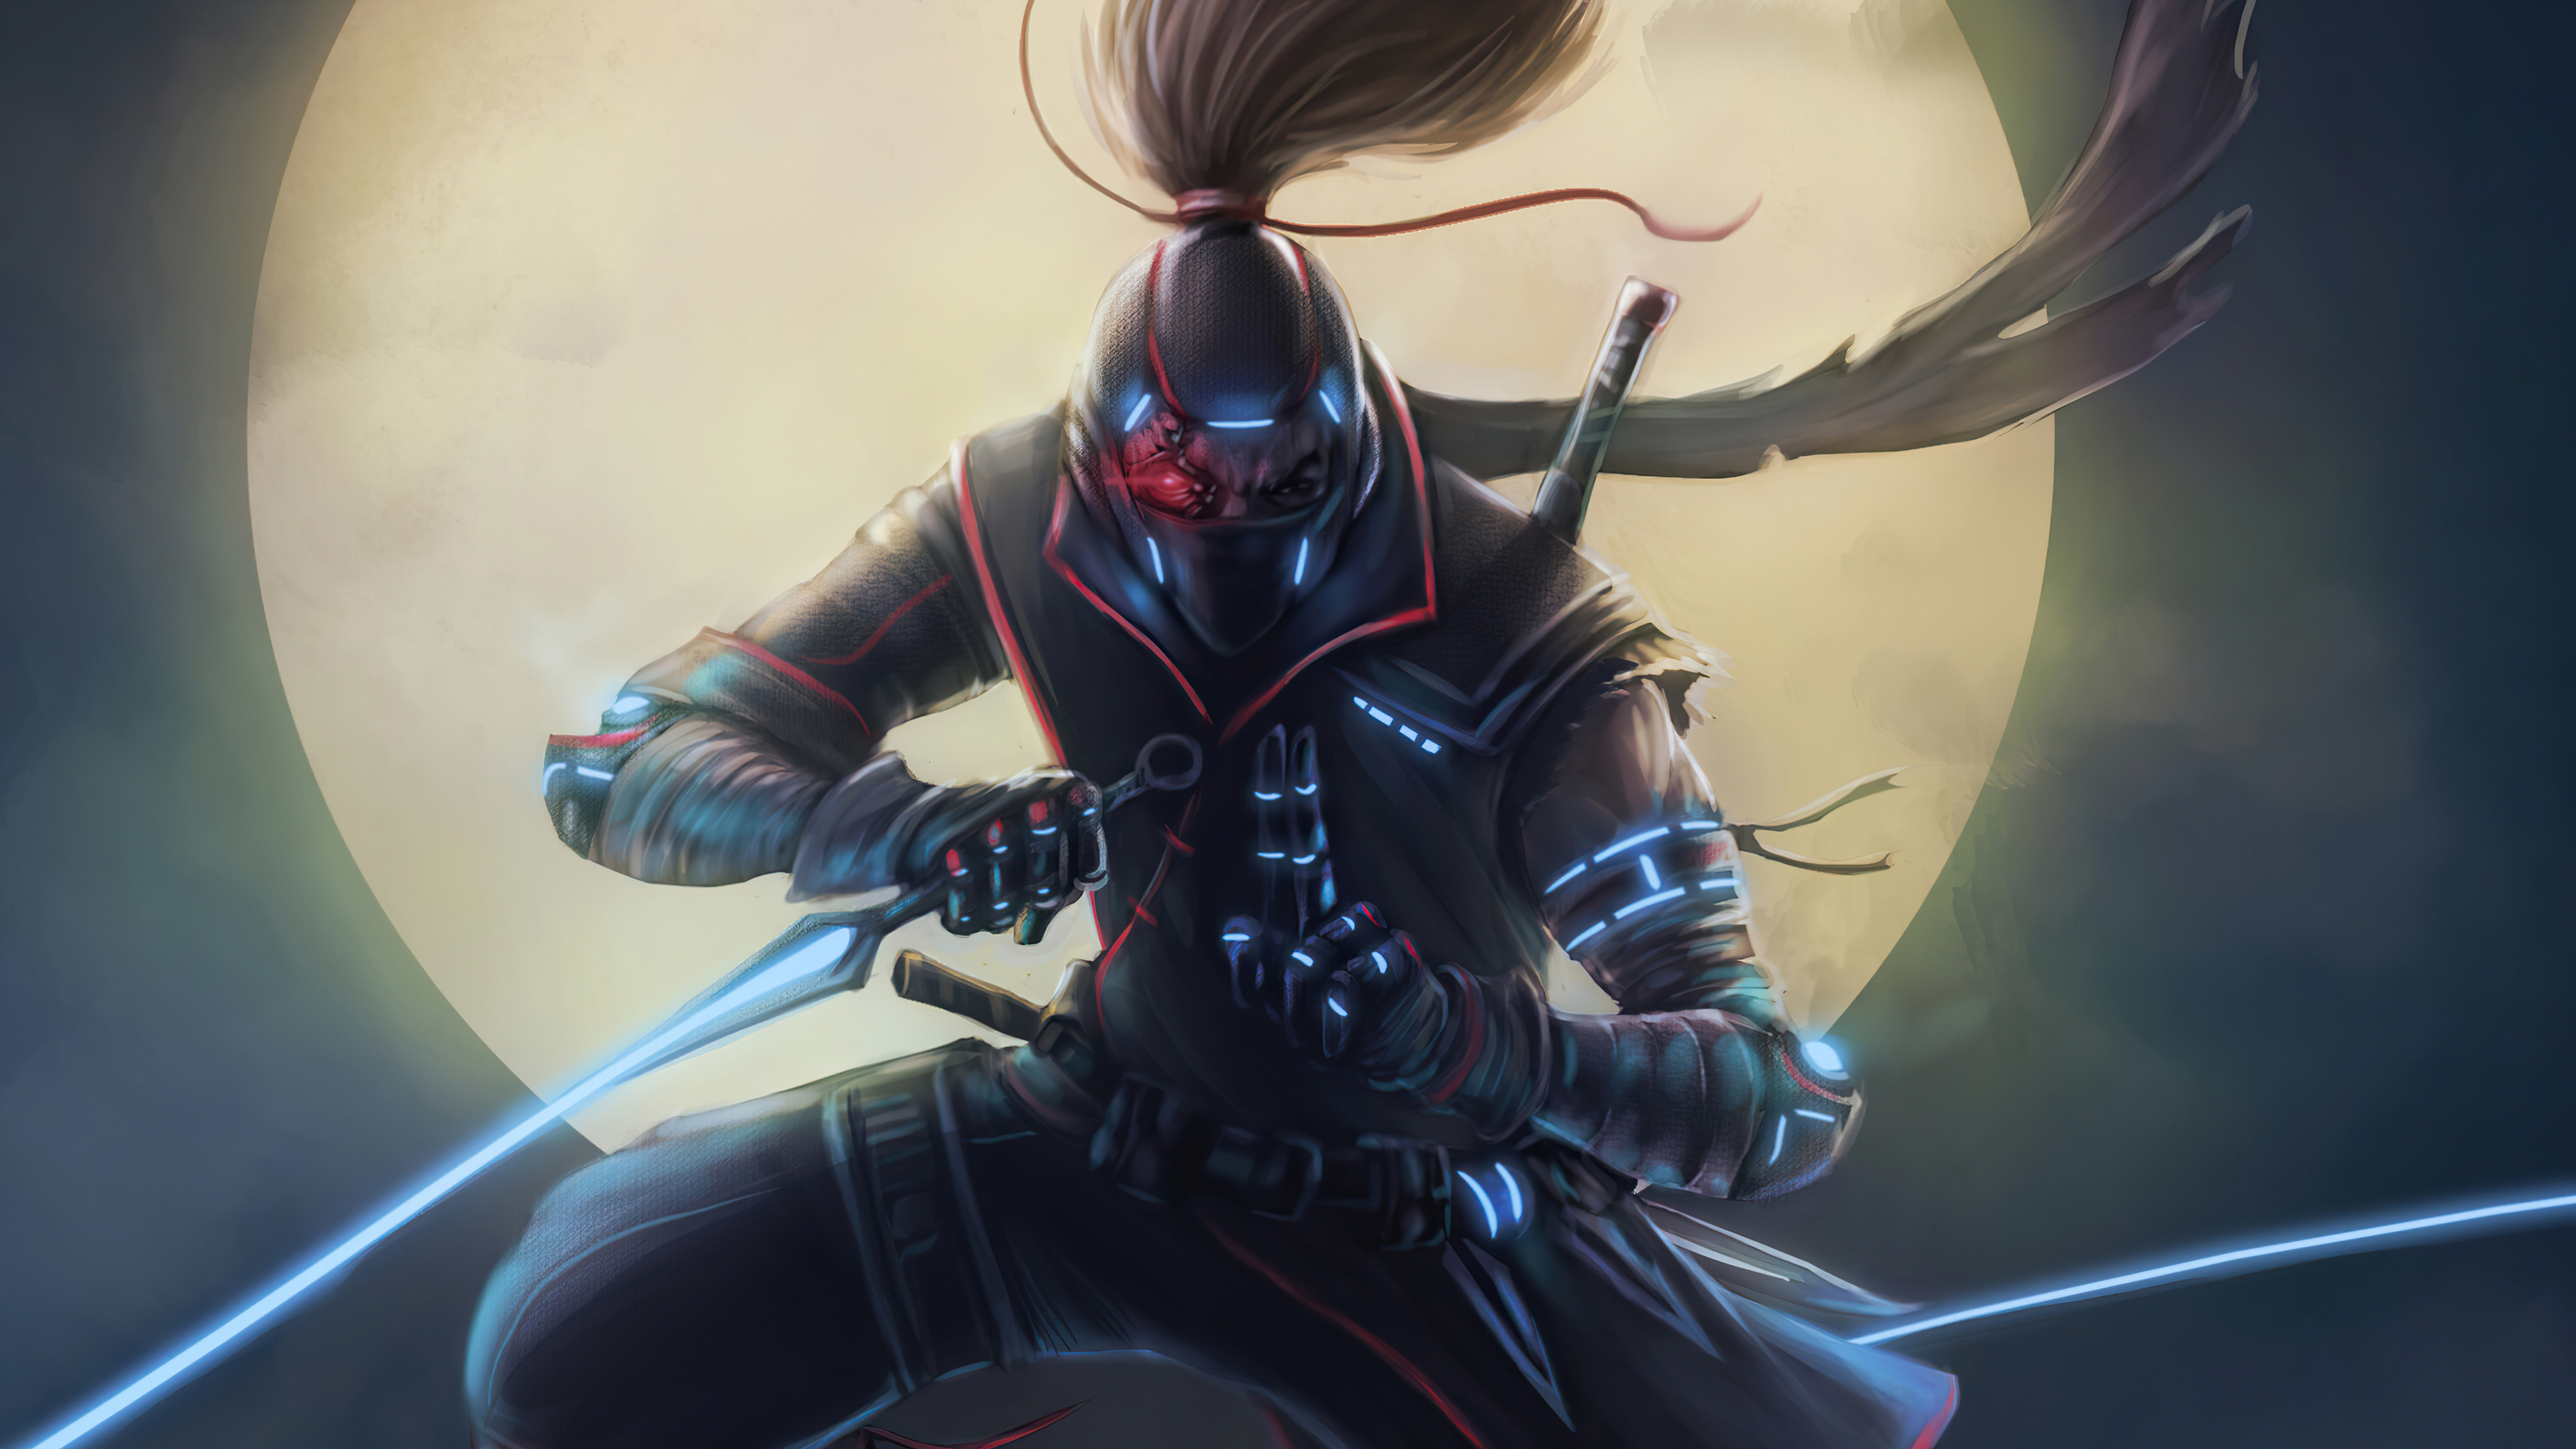 Cyberpunk Ninja Warrior 4K HD Wallpapers | HD Wallpapers